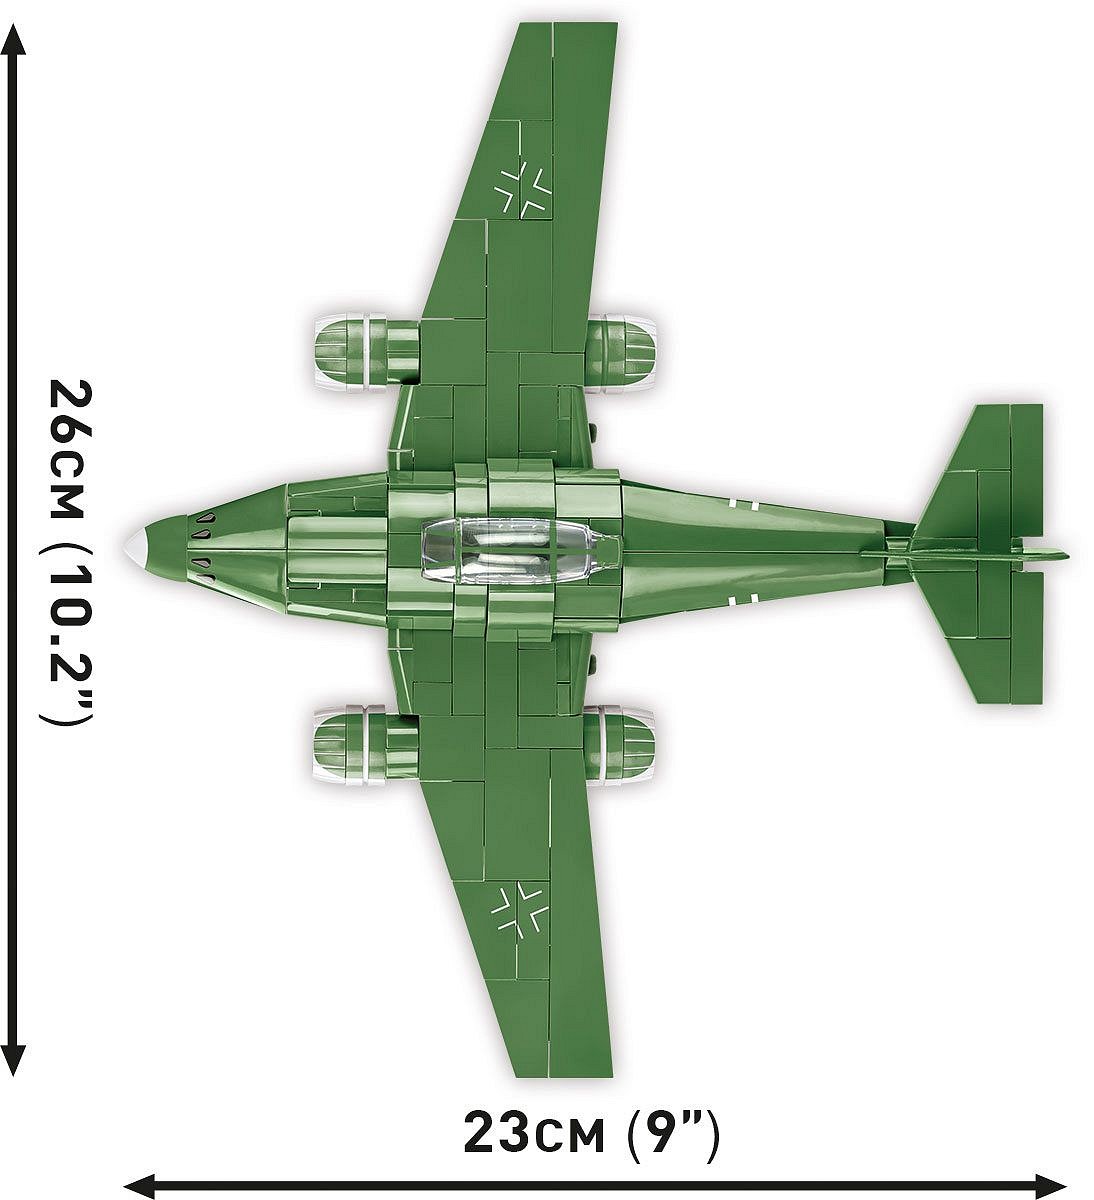 Messerschmitt Me262 - fot. 7